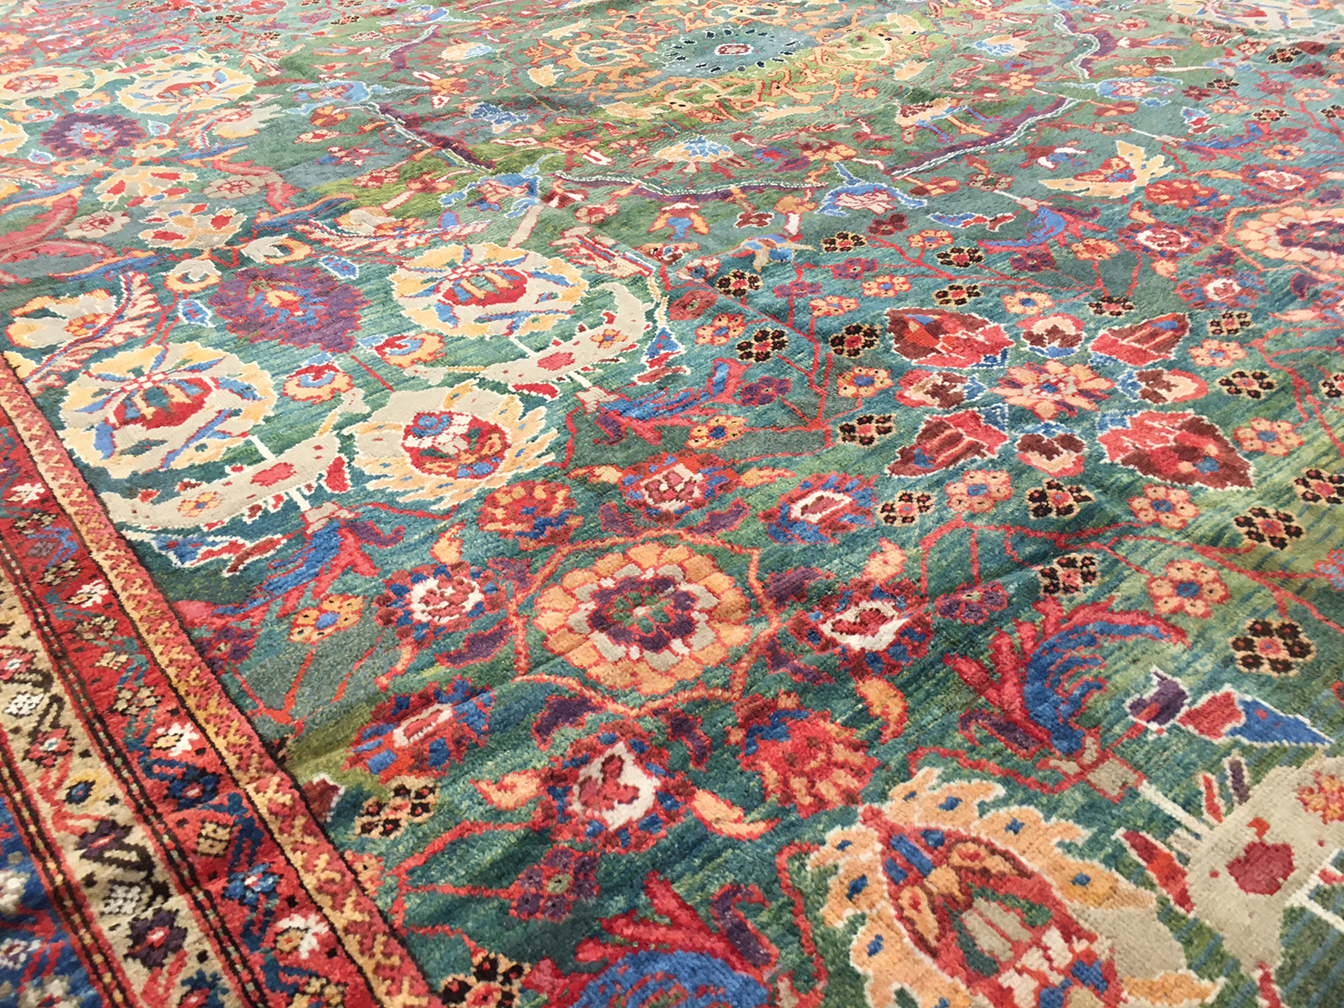 Antique mahal Carpet - # 54246